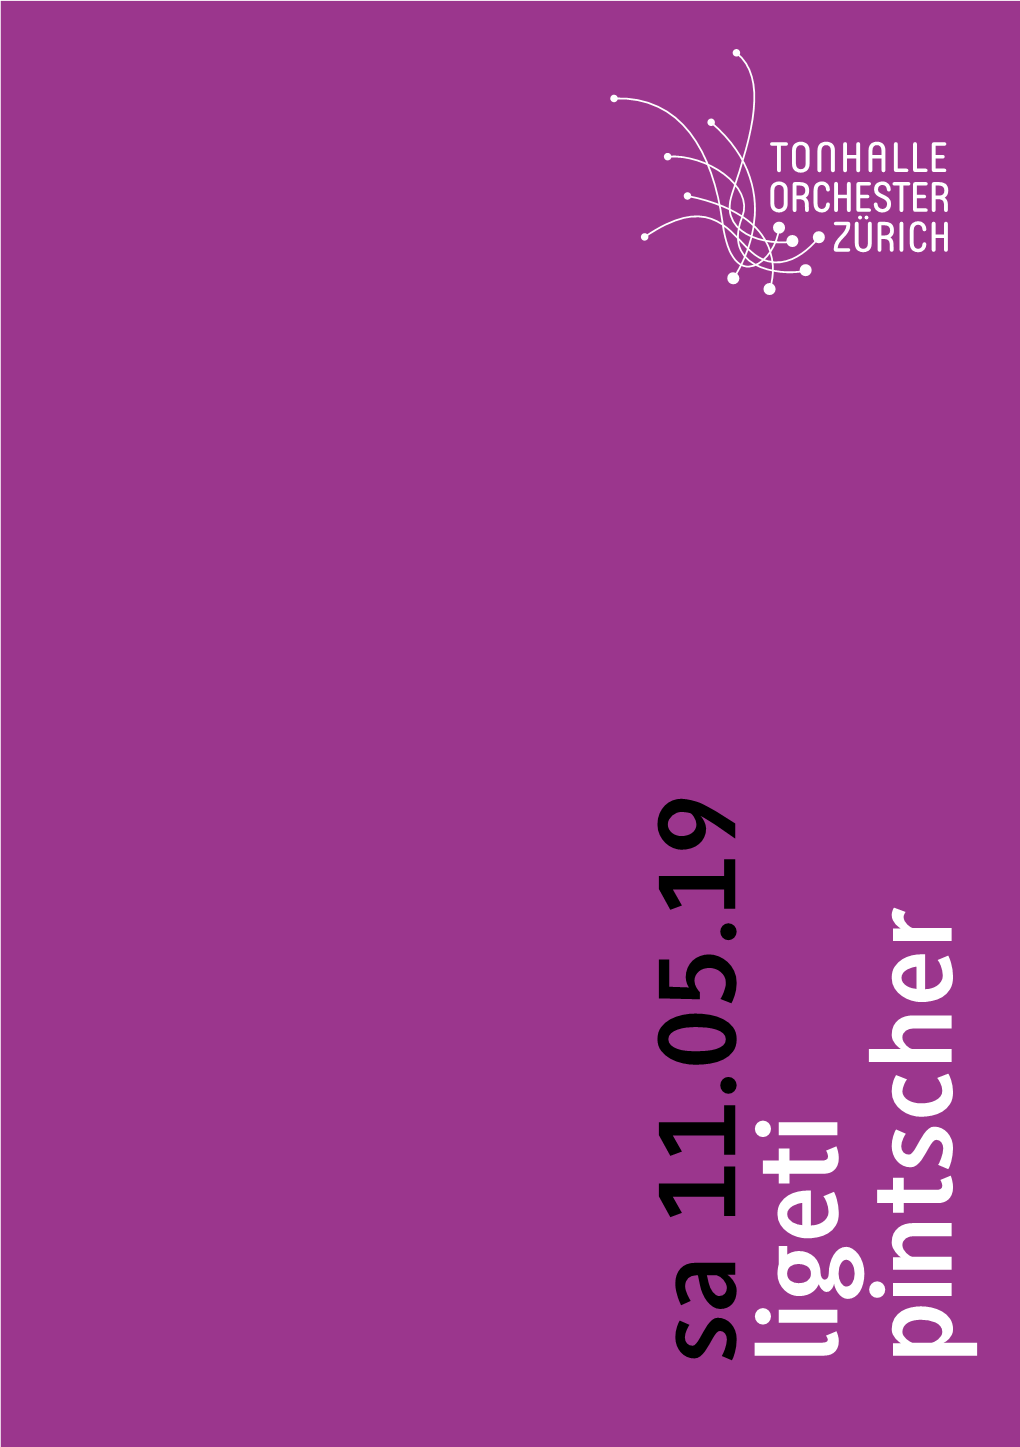 Sa 11.05.19 Ligeti Pintscher Sa 11.05.19 19.30 Uhr